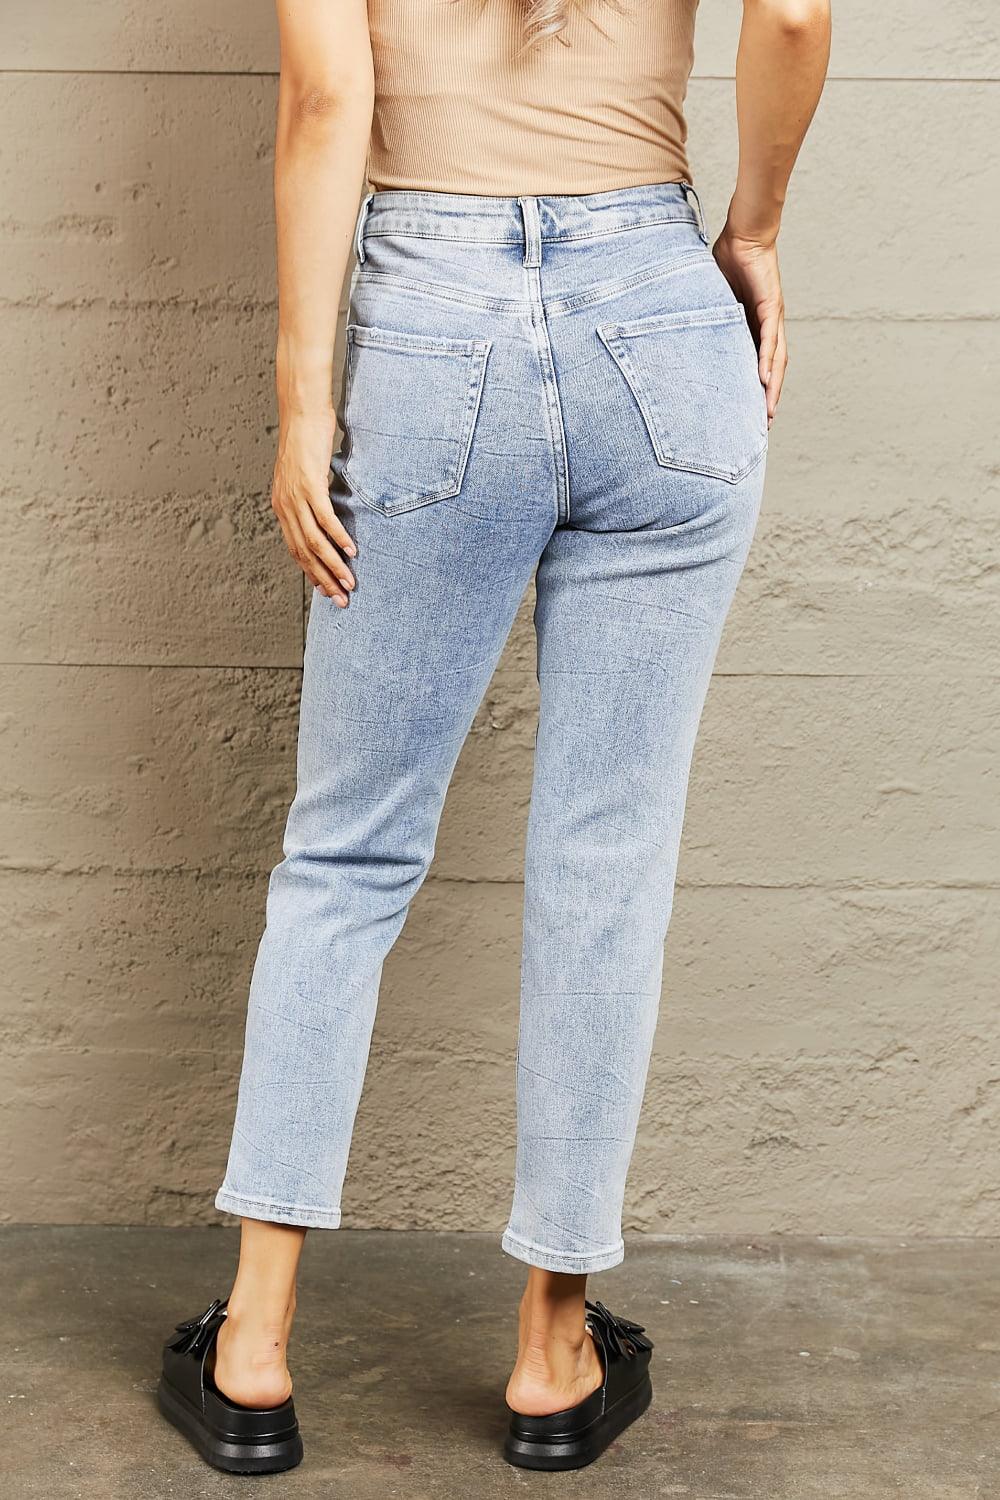 BAYEAS High Waisted Skinny Jeans - Lab Fashion, Home & Health